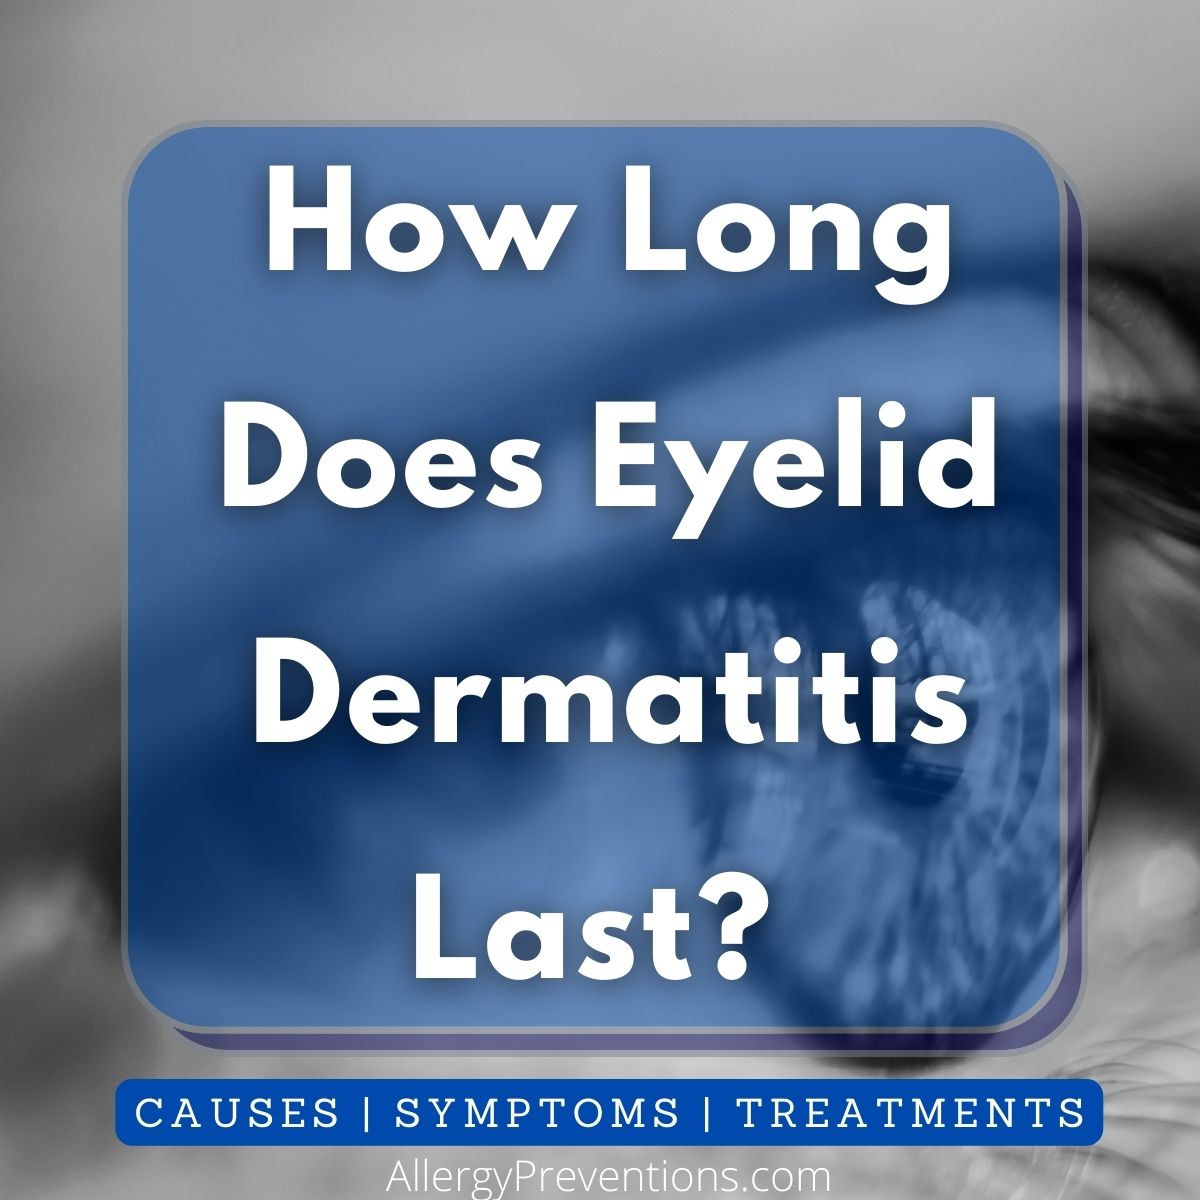 How long does eyelid dermatitis last?